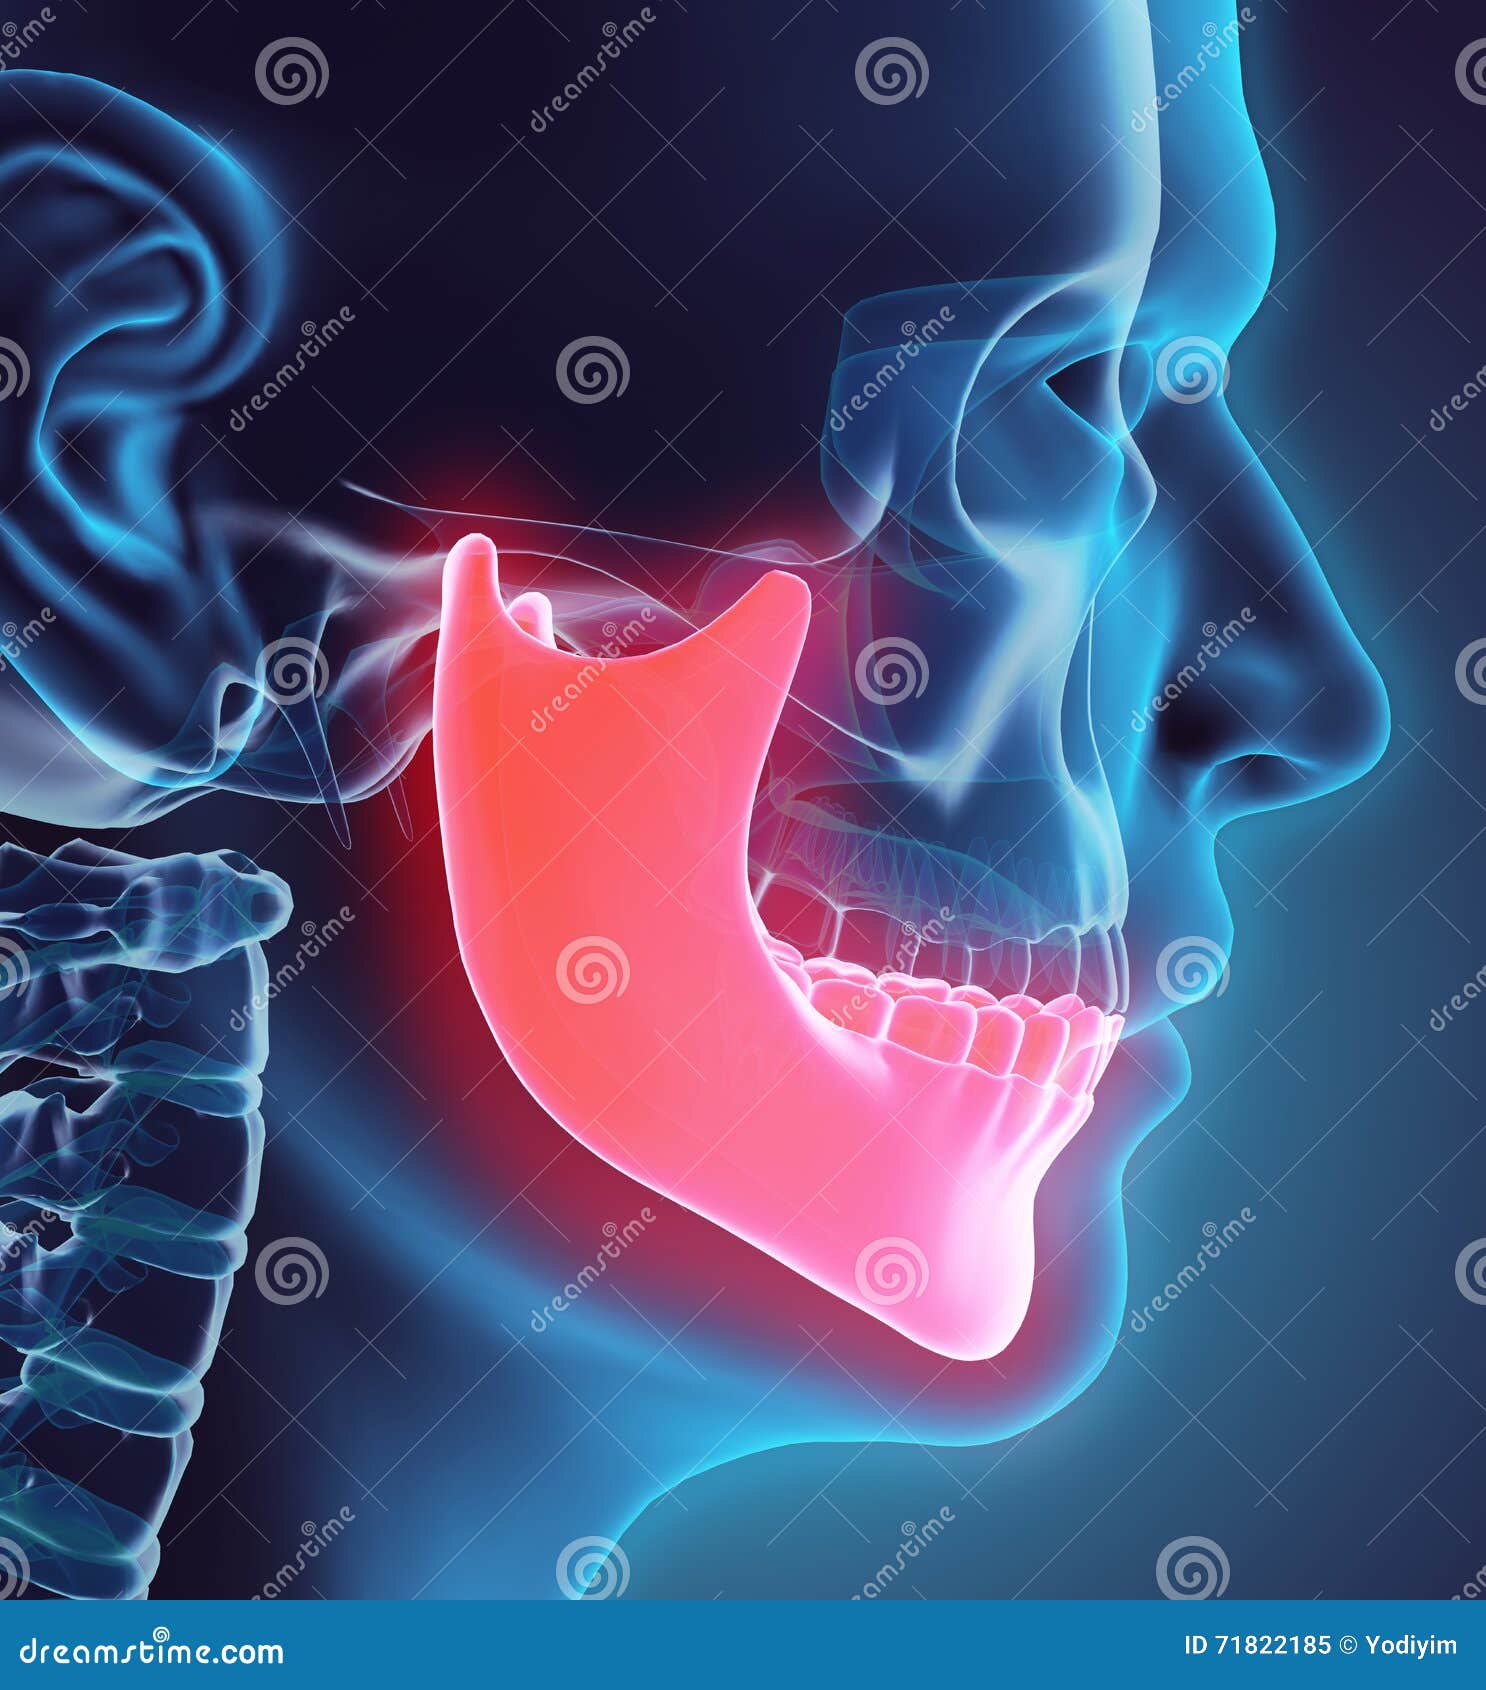 「腭、颚、颔、颌、颏」这几个字在医学上对应的部位分别是什么？ - 知乎